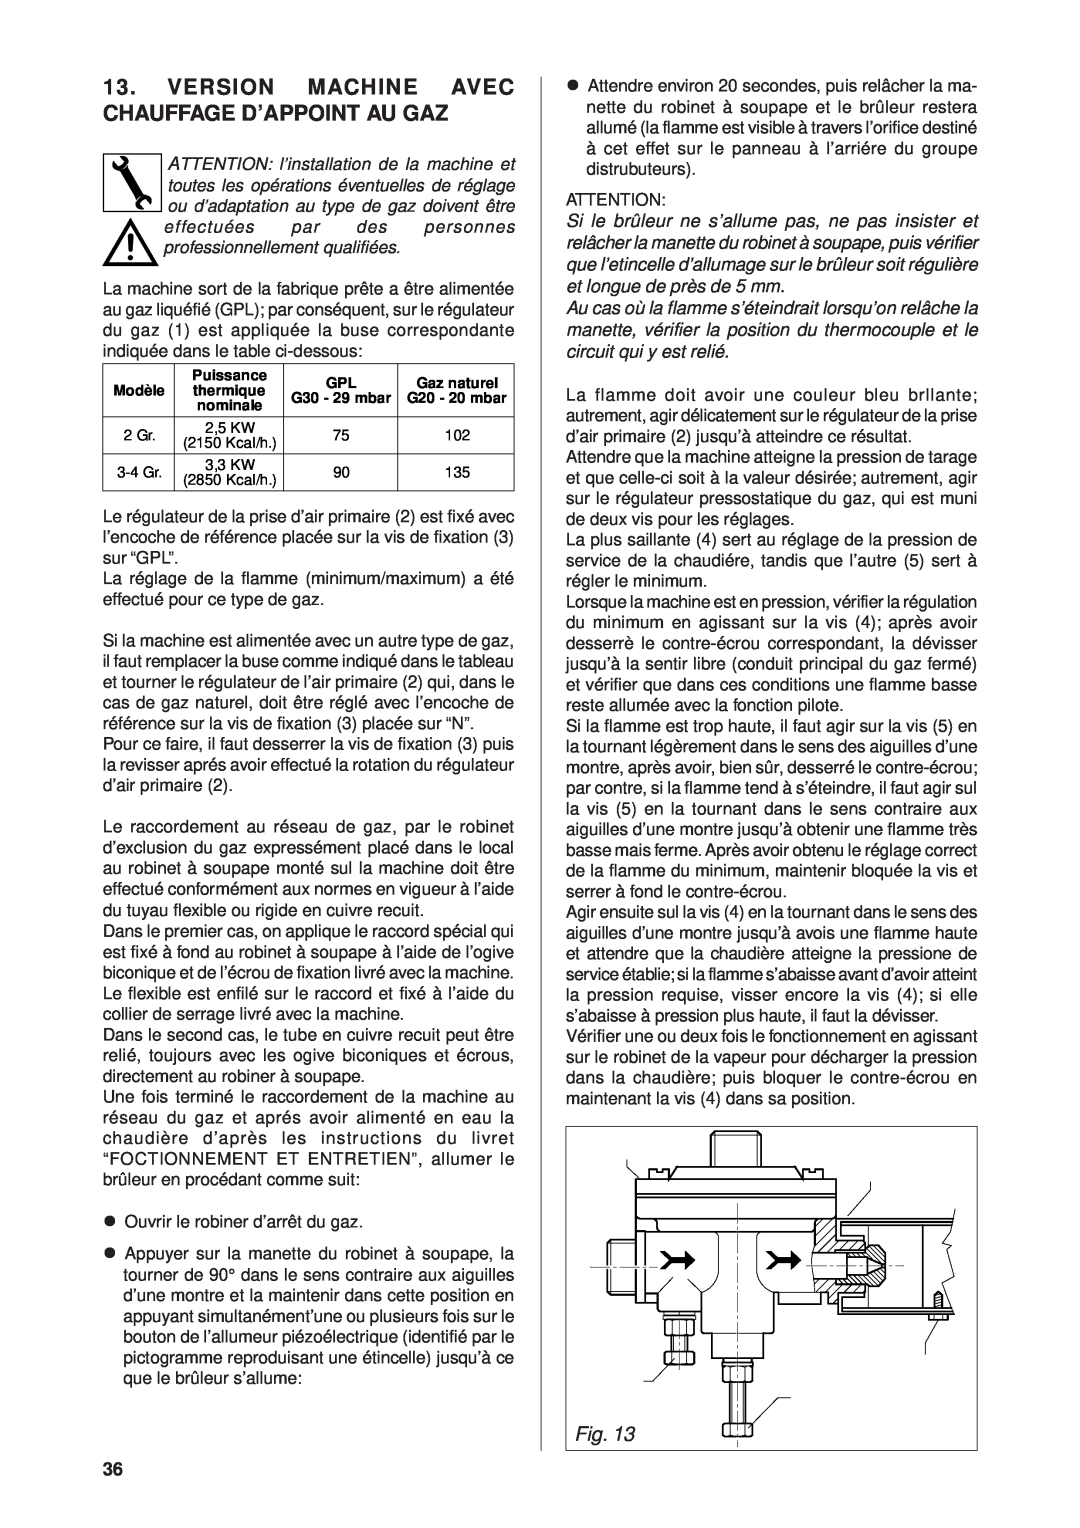 Rancilio Millennium manual Version Machine Avec Chauffage D’Appoint Au Gaz 